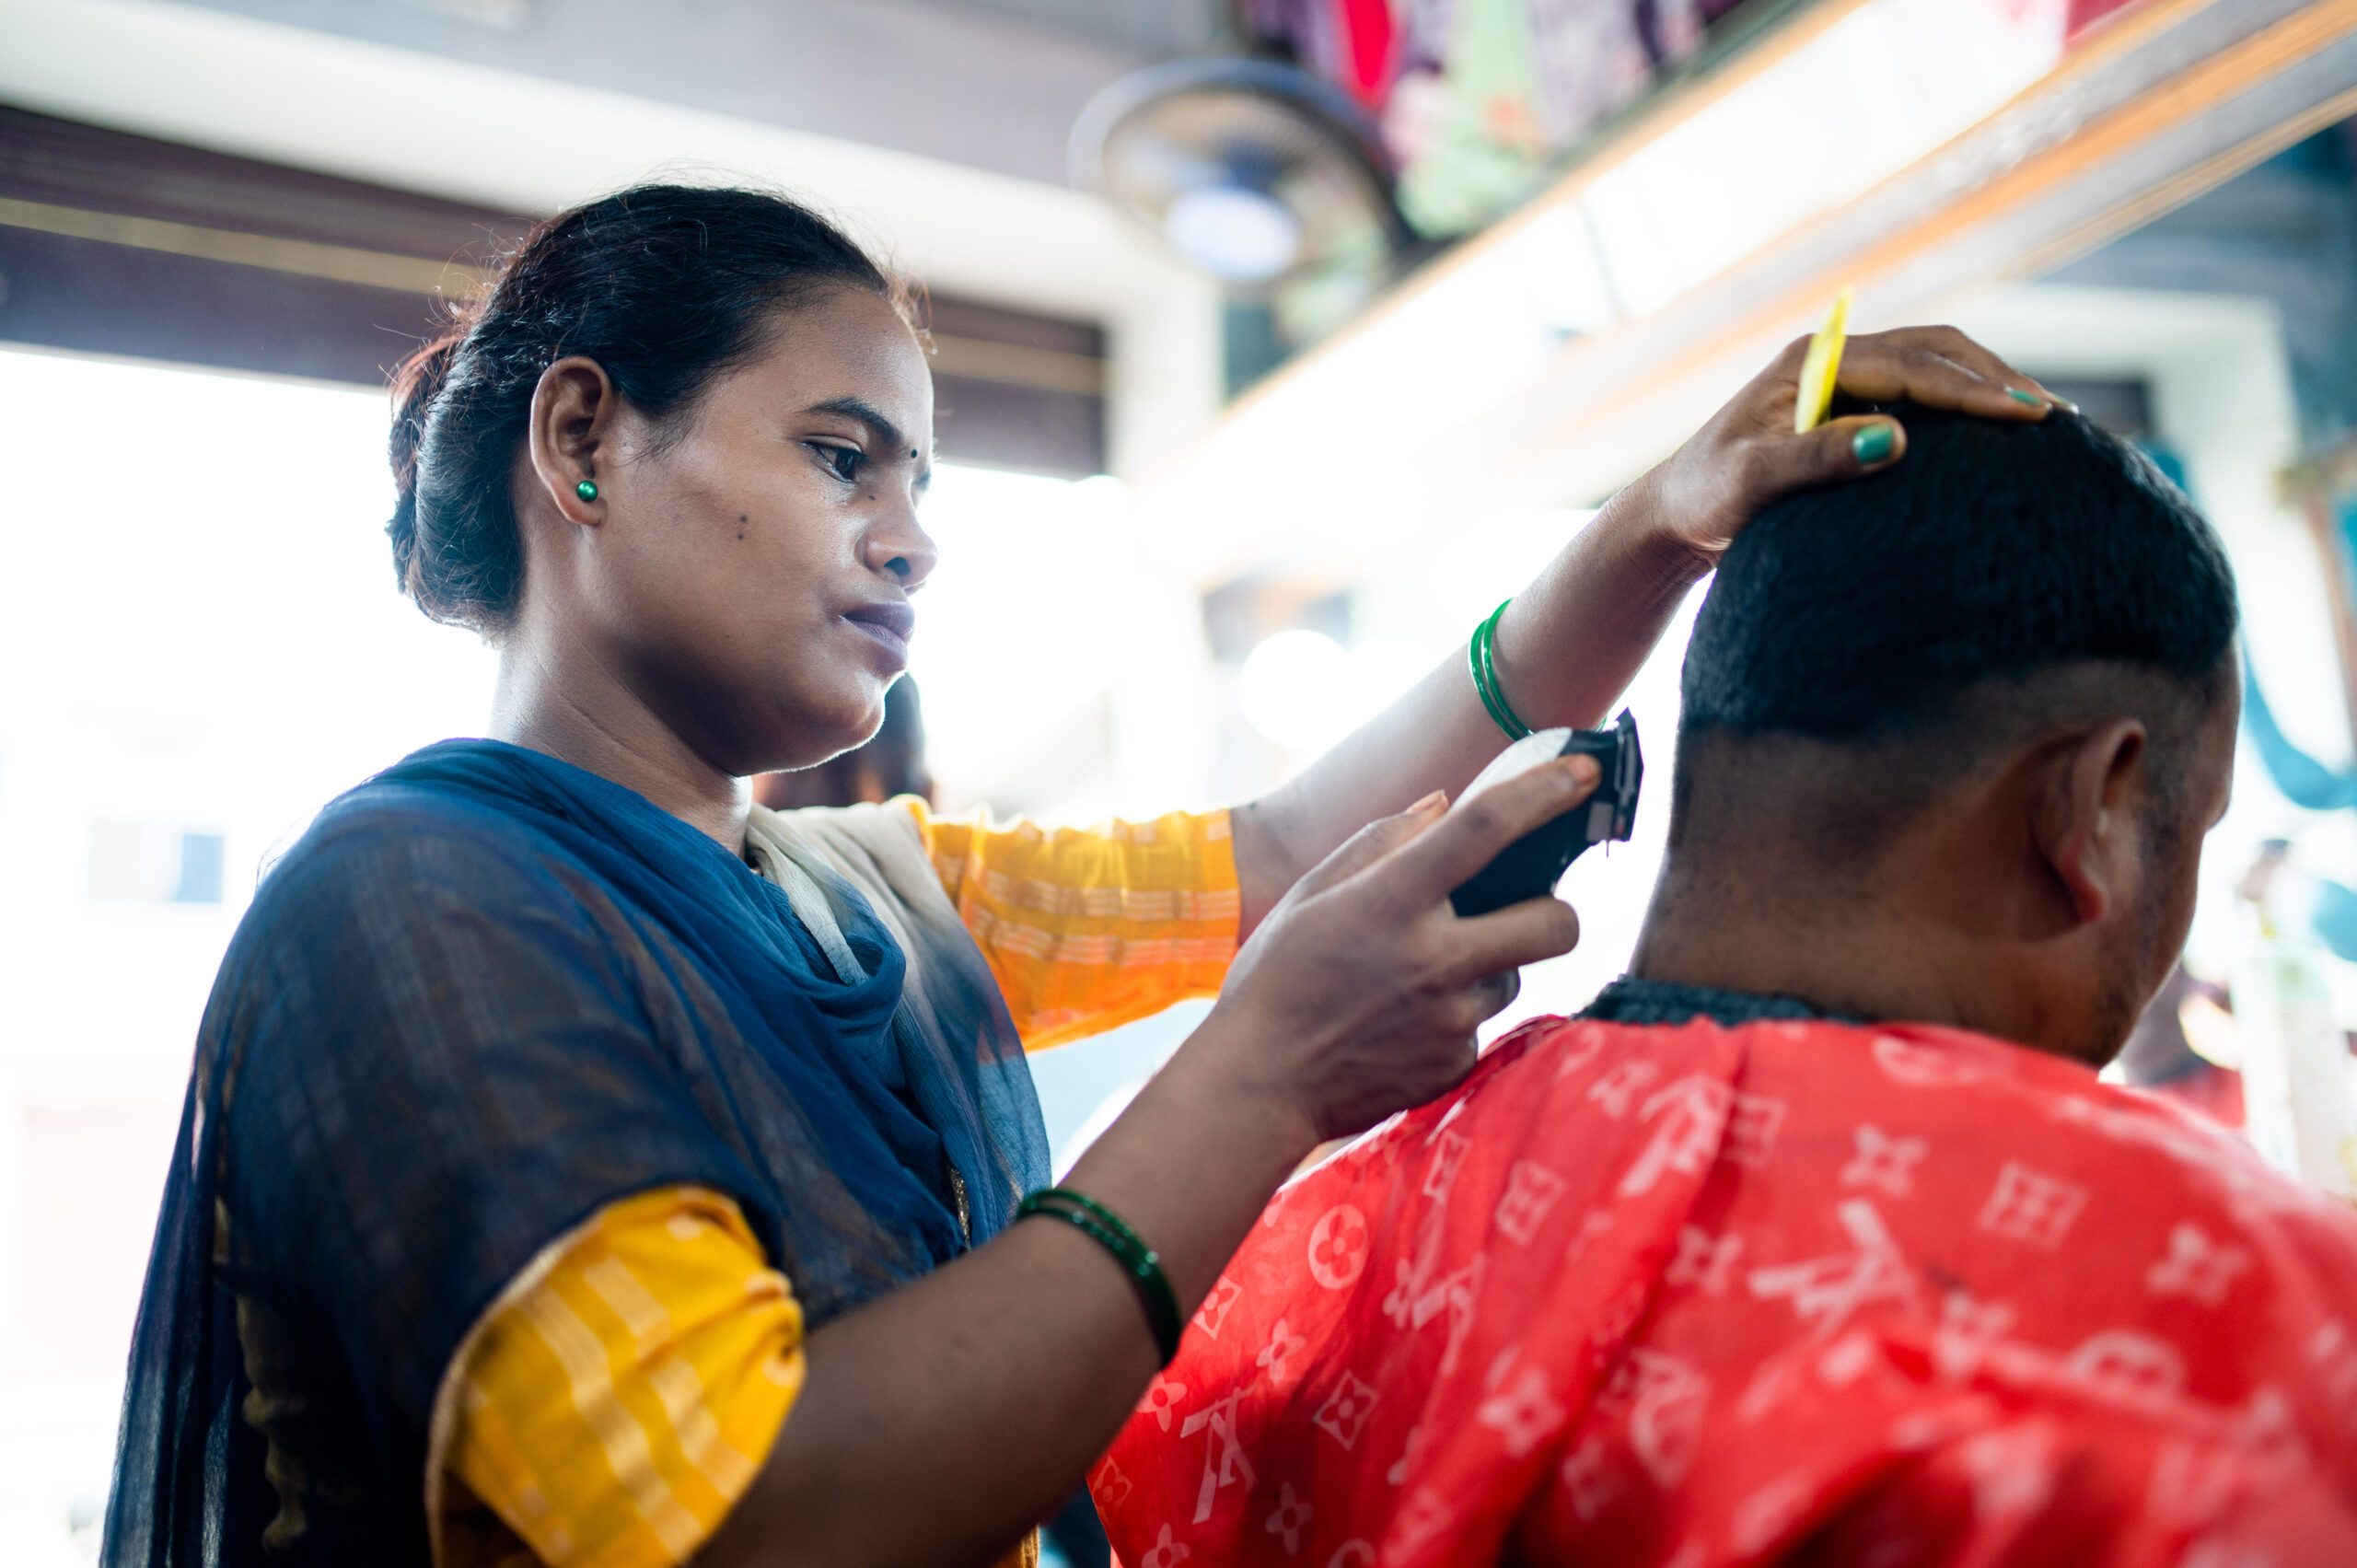 Rampati cutting a mans hair. 